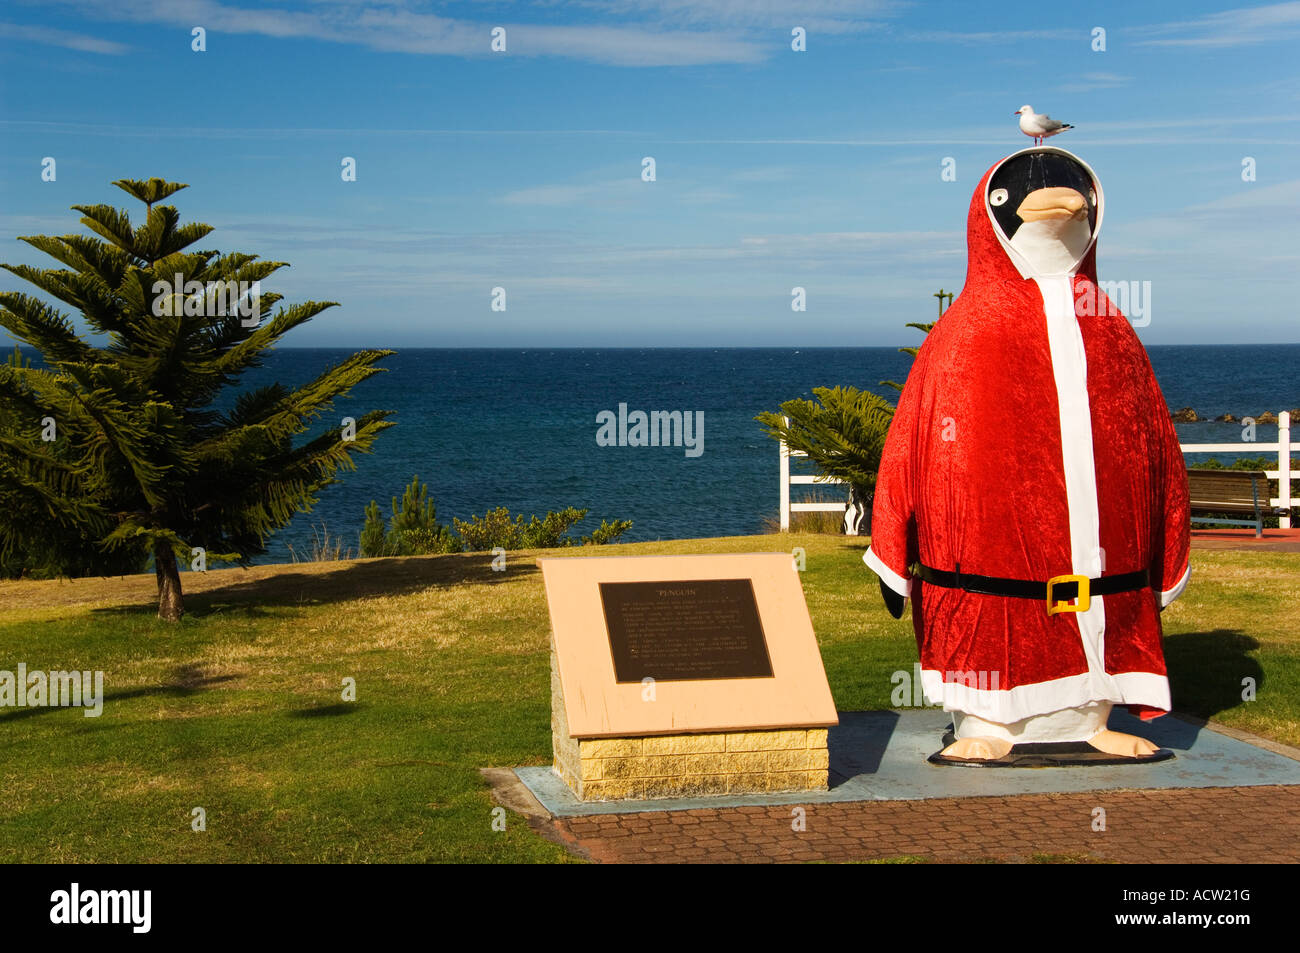 Australia Tasmania Penguin Town Giant Penguin Dressed as Santa Claus Stock Photo